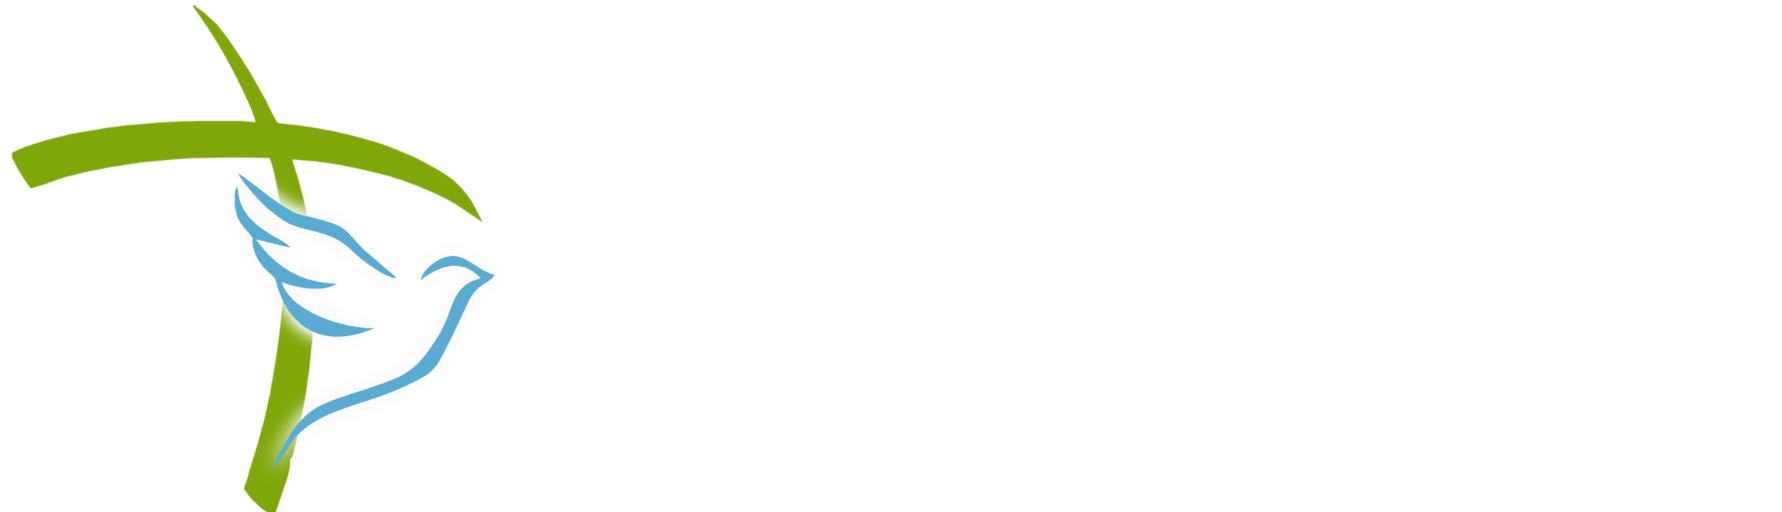 Crossroads Parish